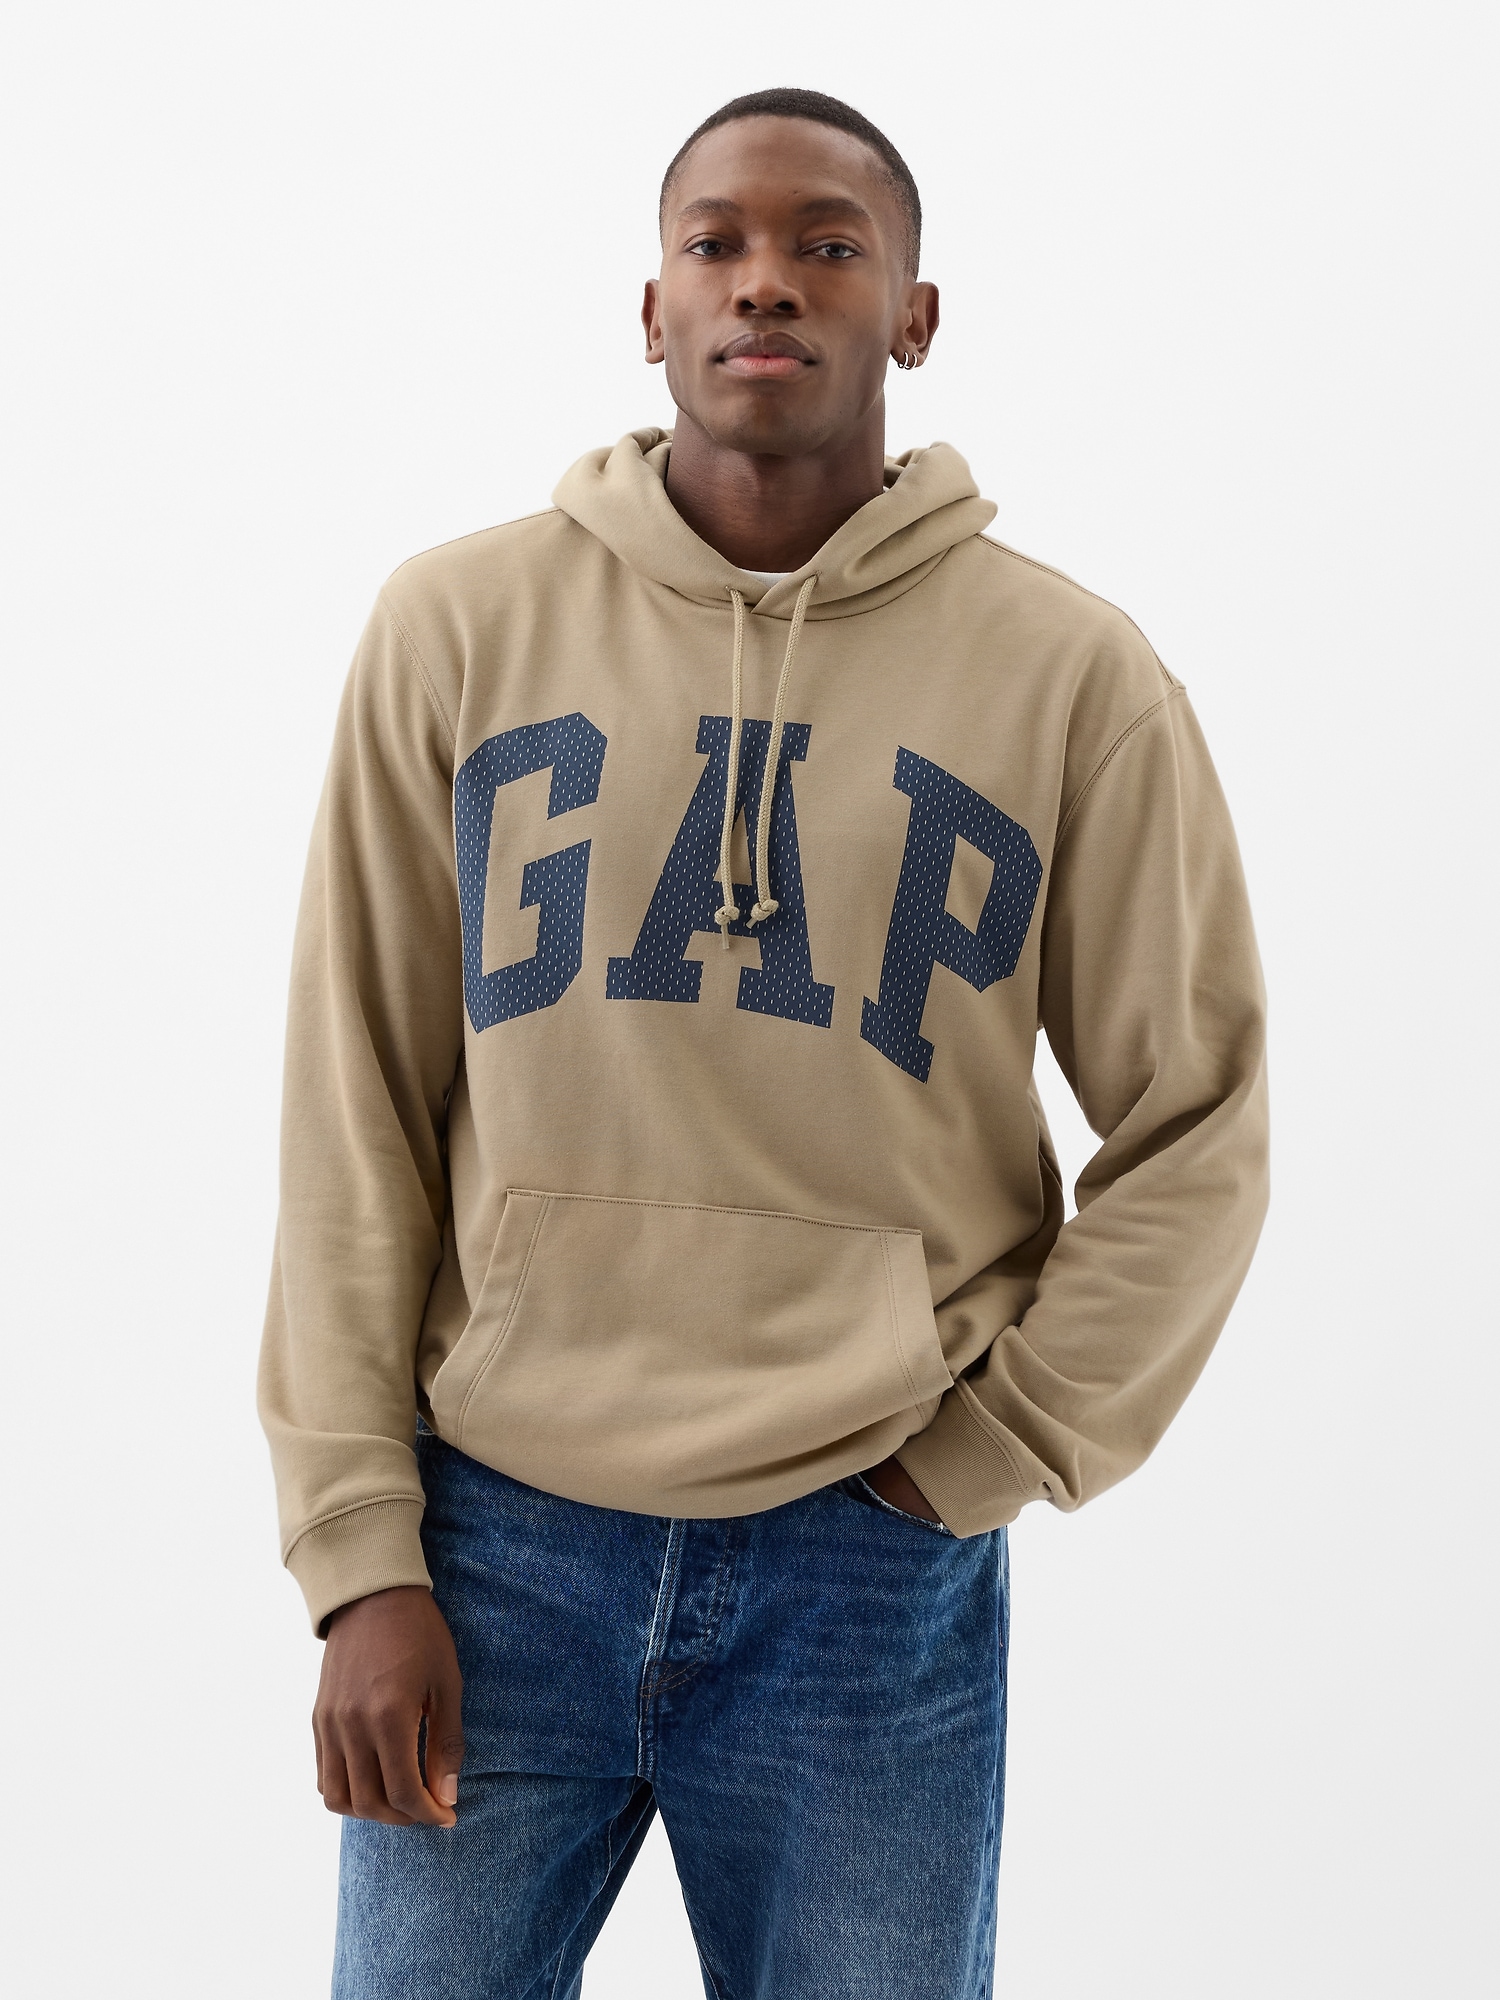 GAP Logo & Hoodie - Men's